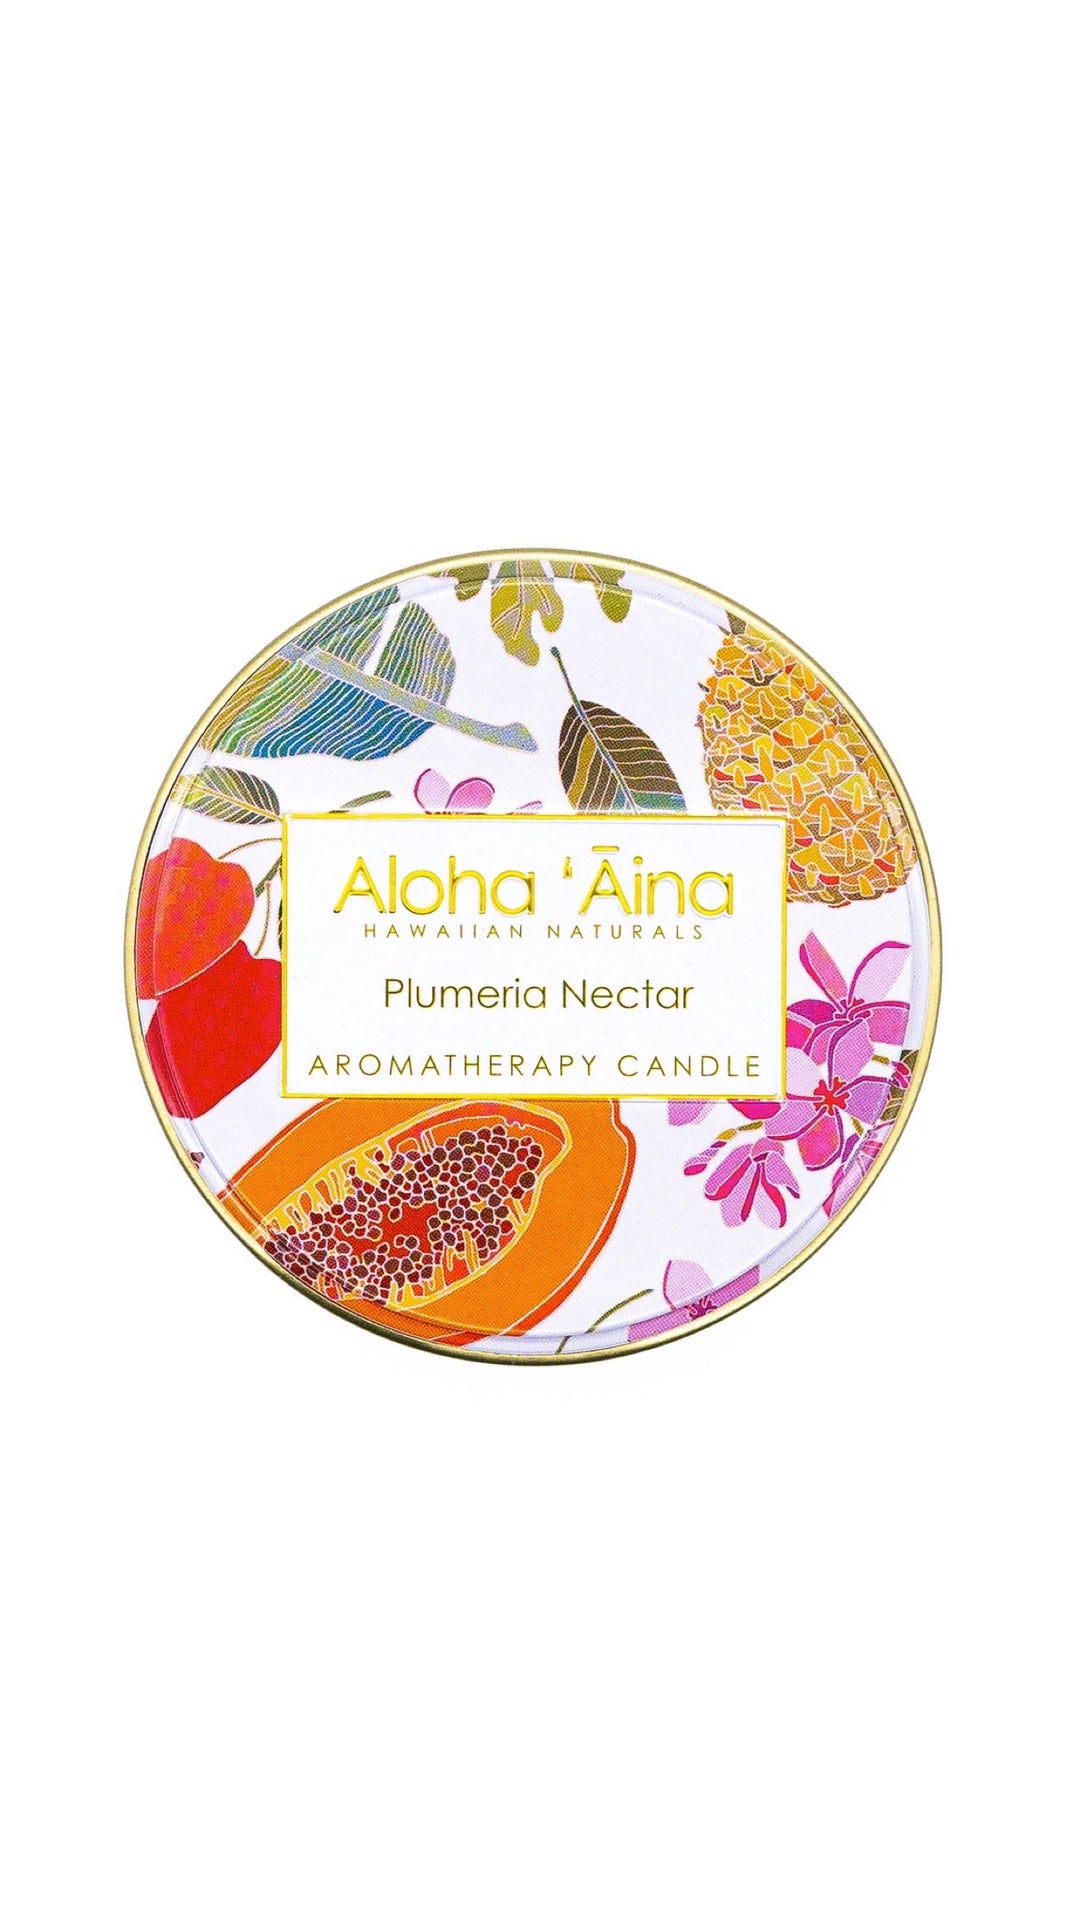 Maui Soap Co. - Aloha 'Aina - Plumeria Nectar Gold Tin Candle